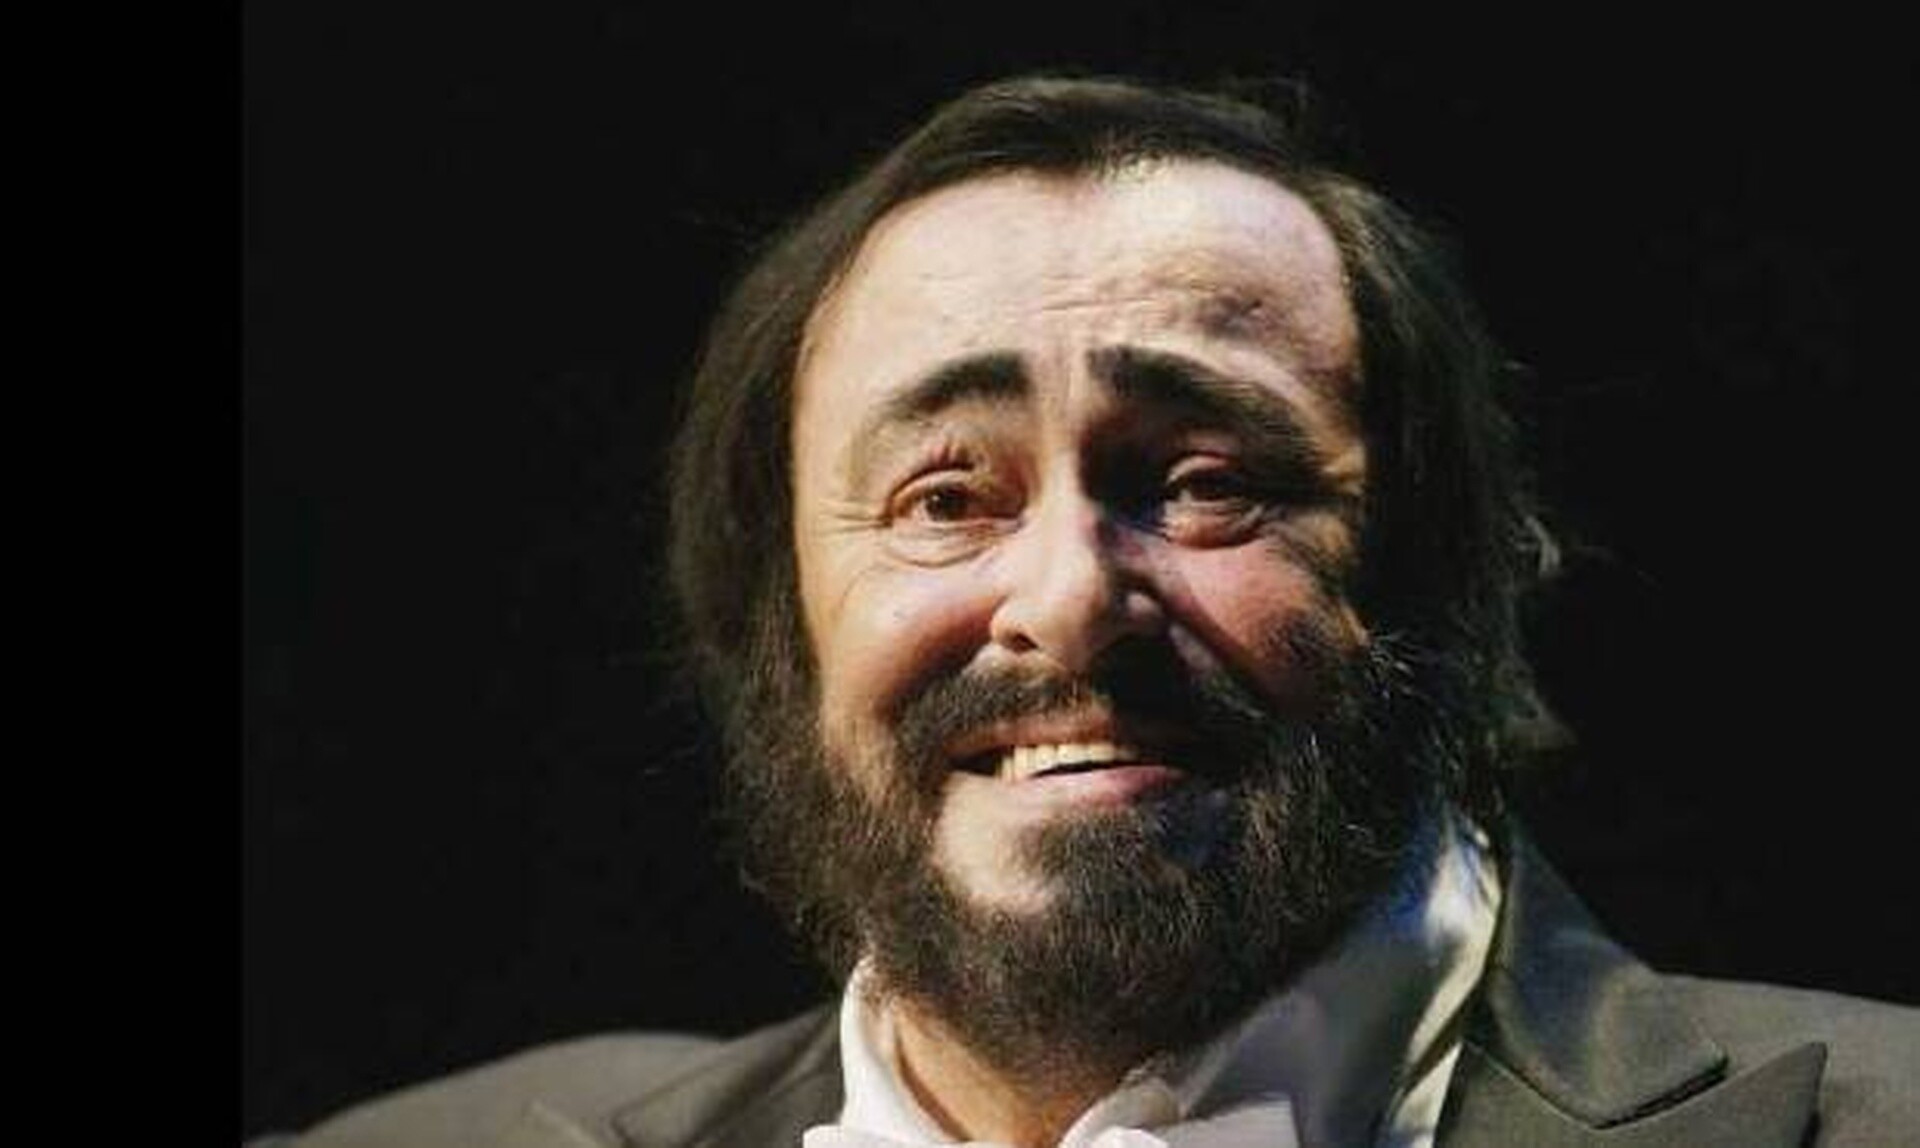 Λουτσιάνο Παβαρότι: «Έφερνε μακαρόνια στο θέατρο, έτρωγε στα διαλλείματα και τα έκρυβε»